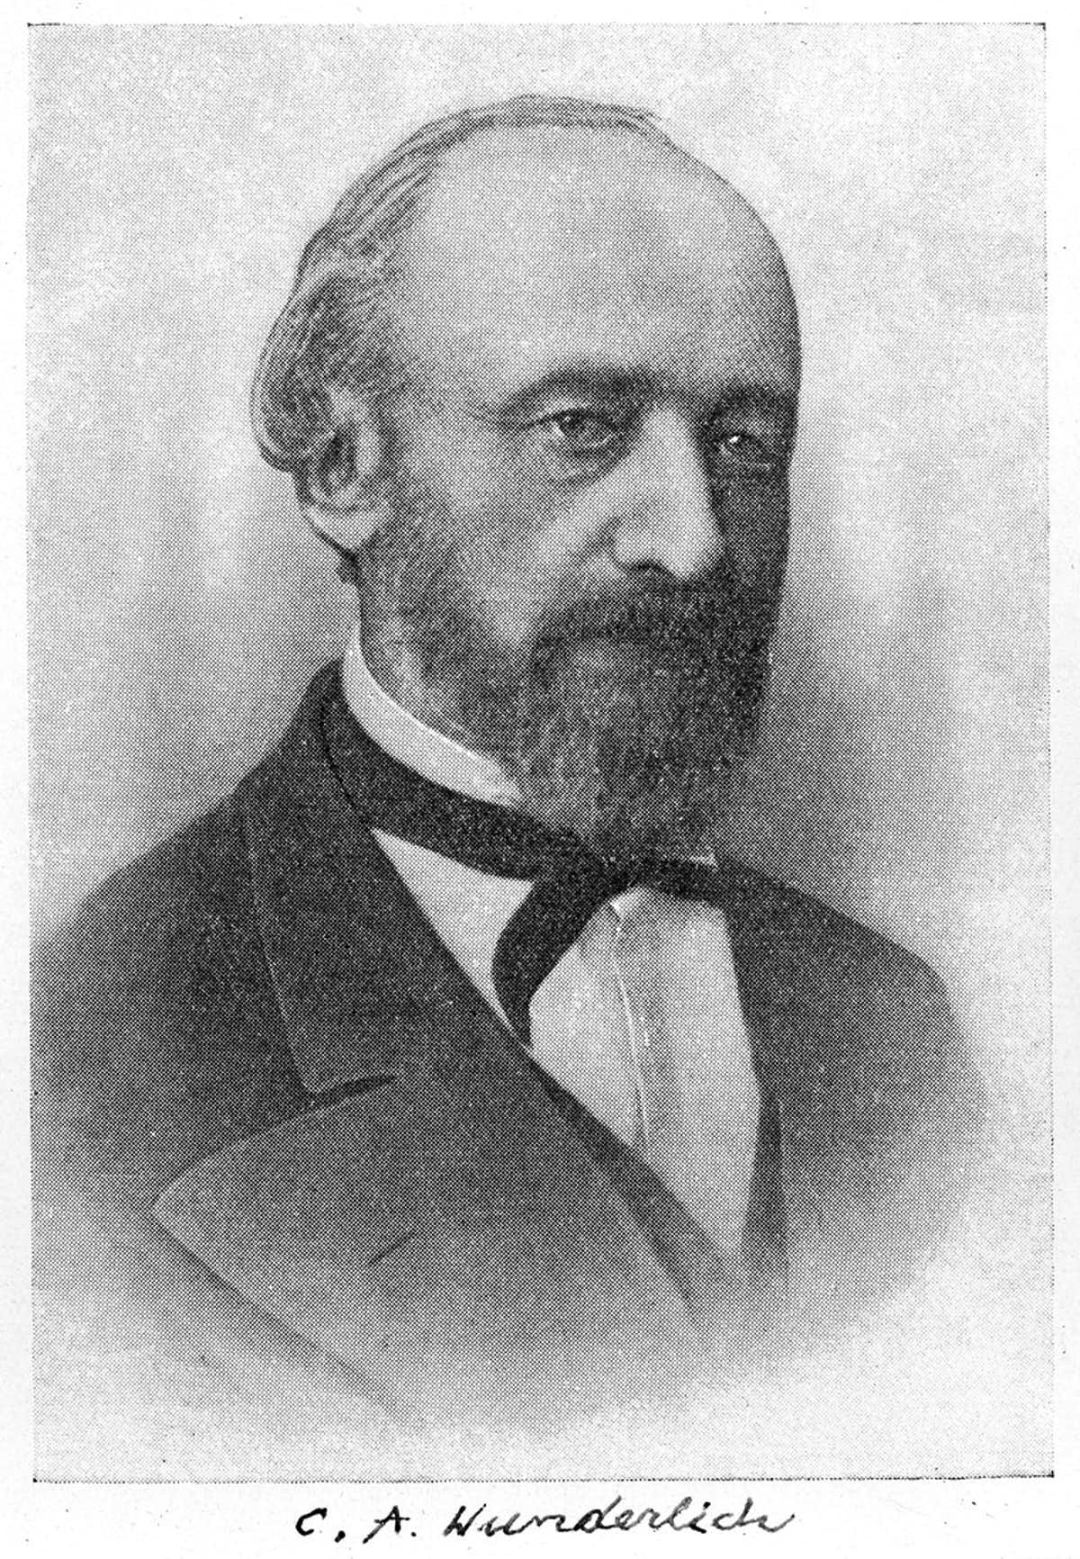 1851年,德国内科医生卡尔·温德利希(carl wunderlich)在收集了莱比锡